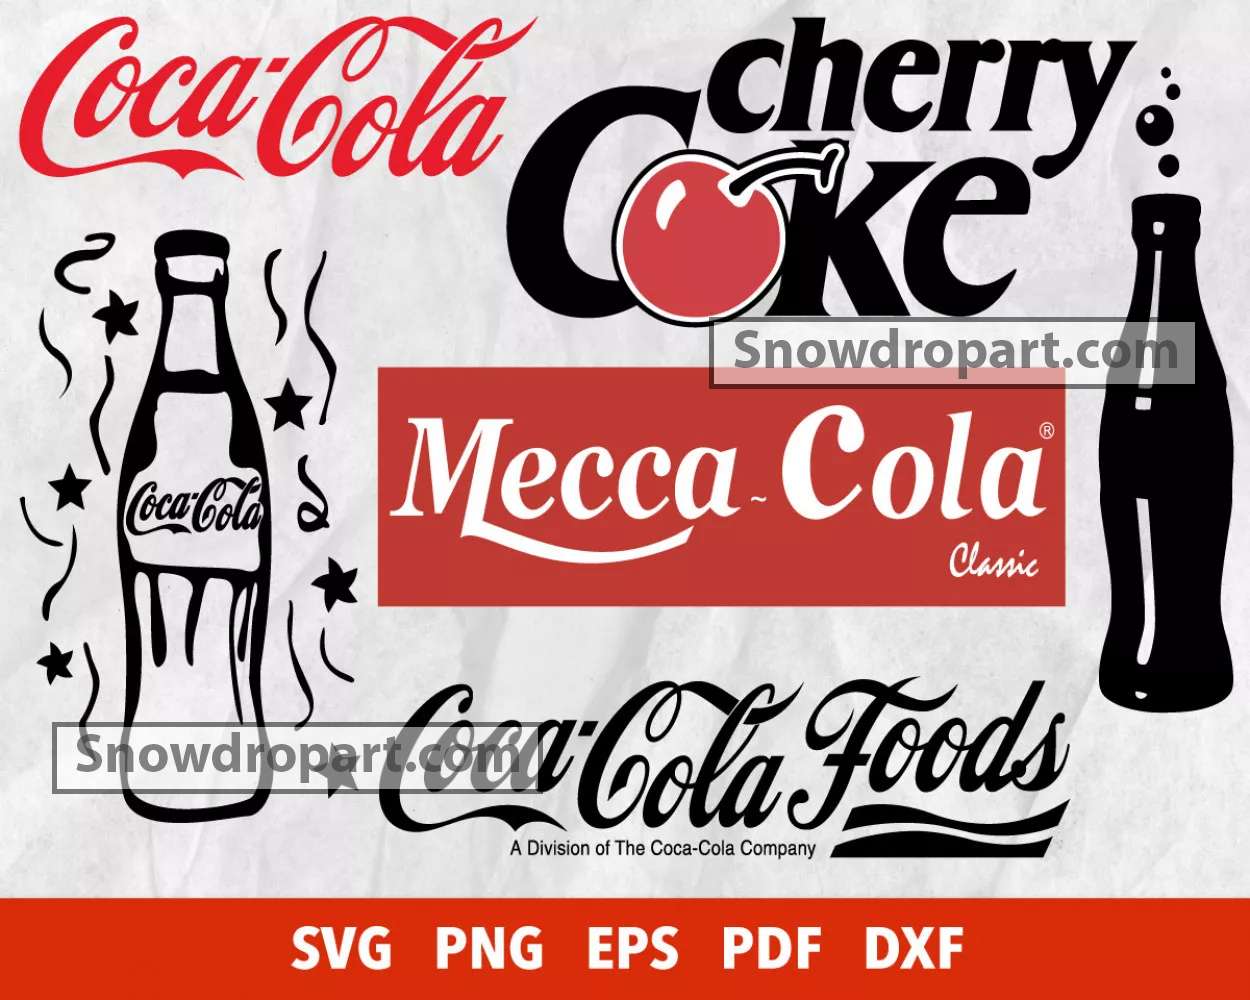 File:Coca-Cola logo.svg - Wikipedia